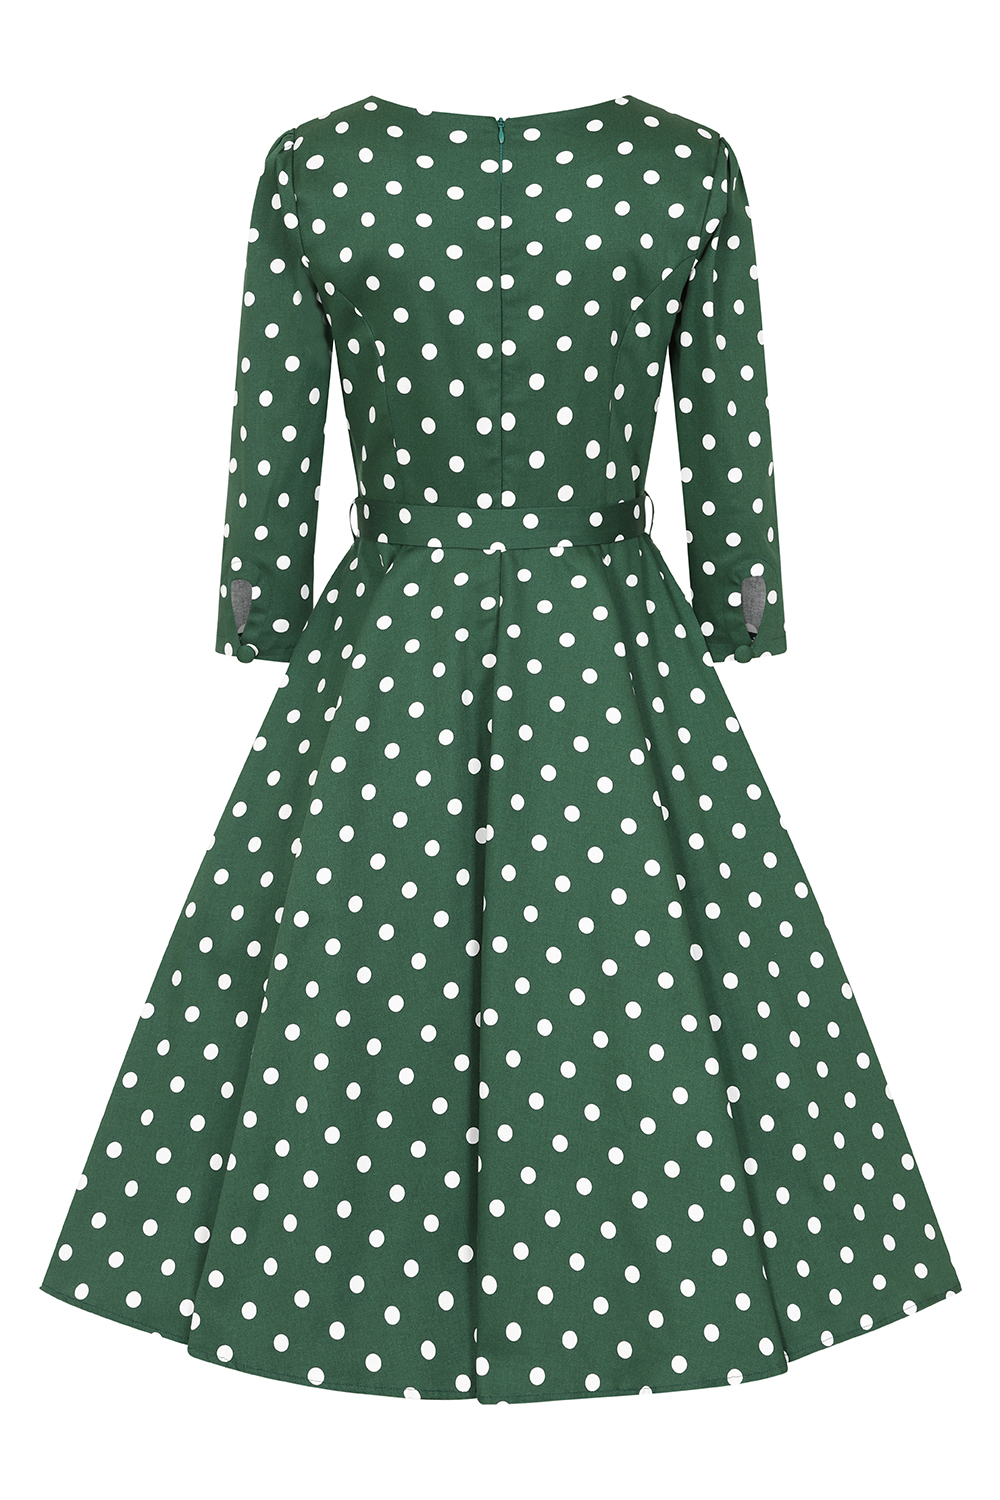 Kylie Green Polka Dot Swing Dress in Plus Size